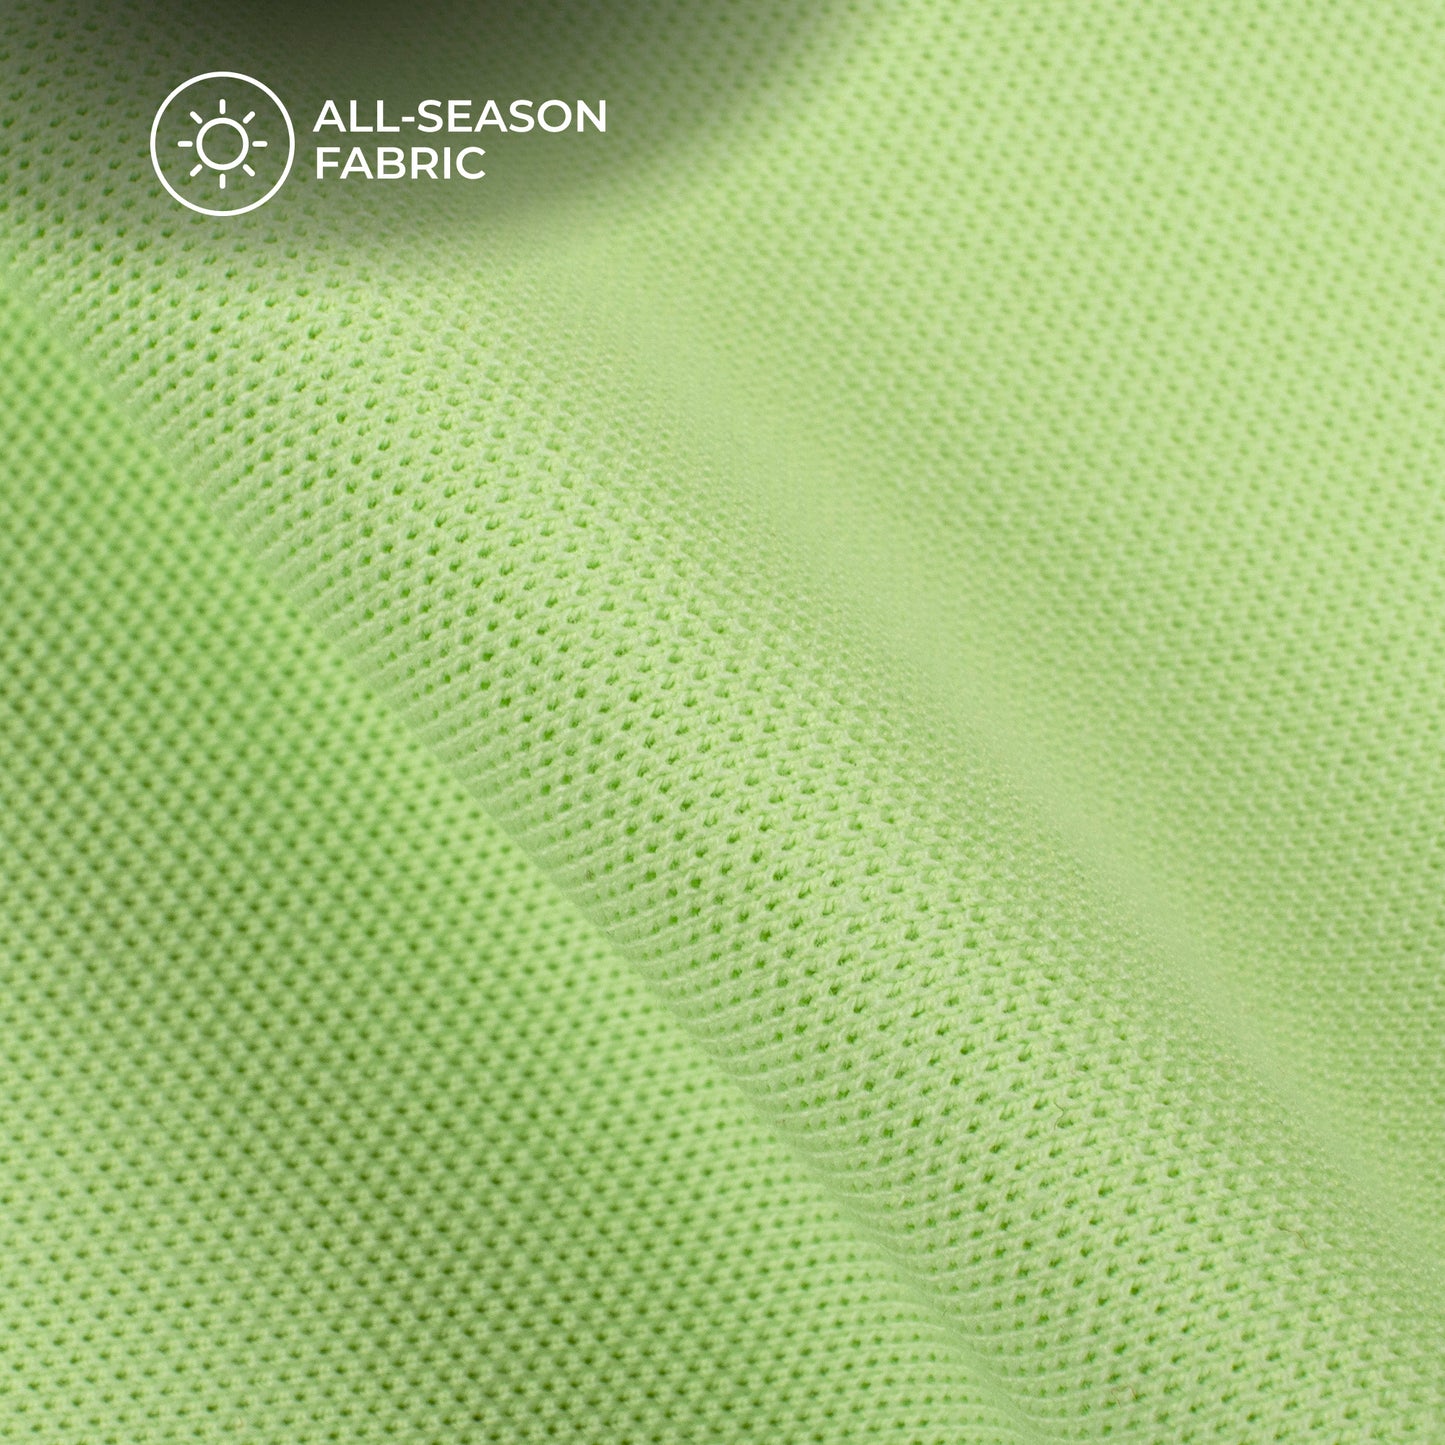 Seafoam Green Plain Stretch Cotton Fabric(Width 96 Inches)